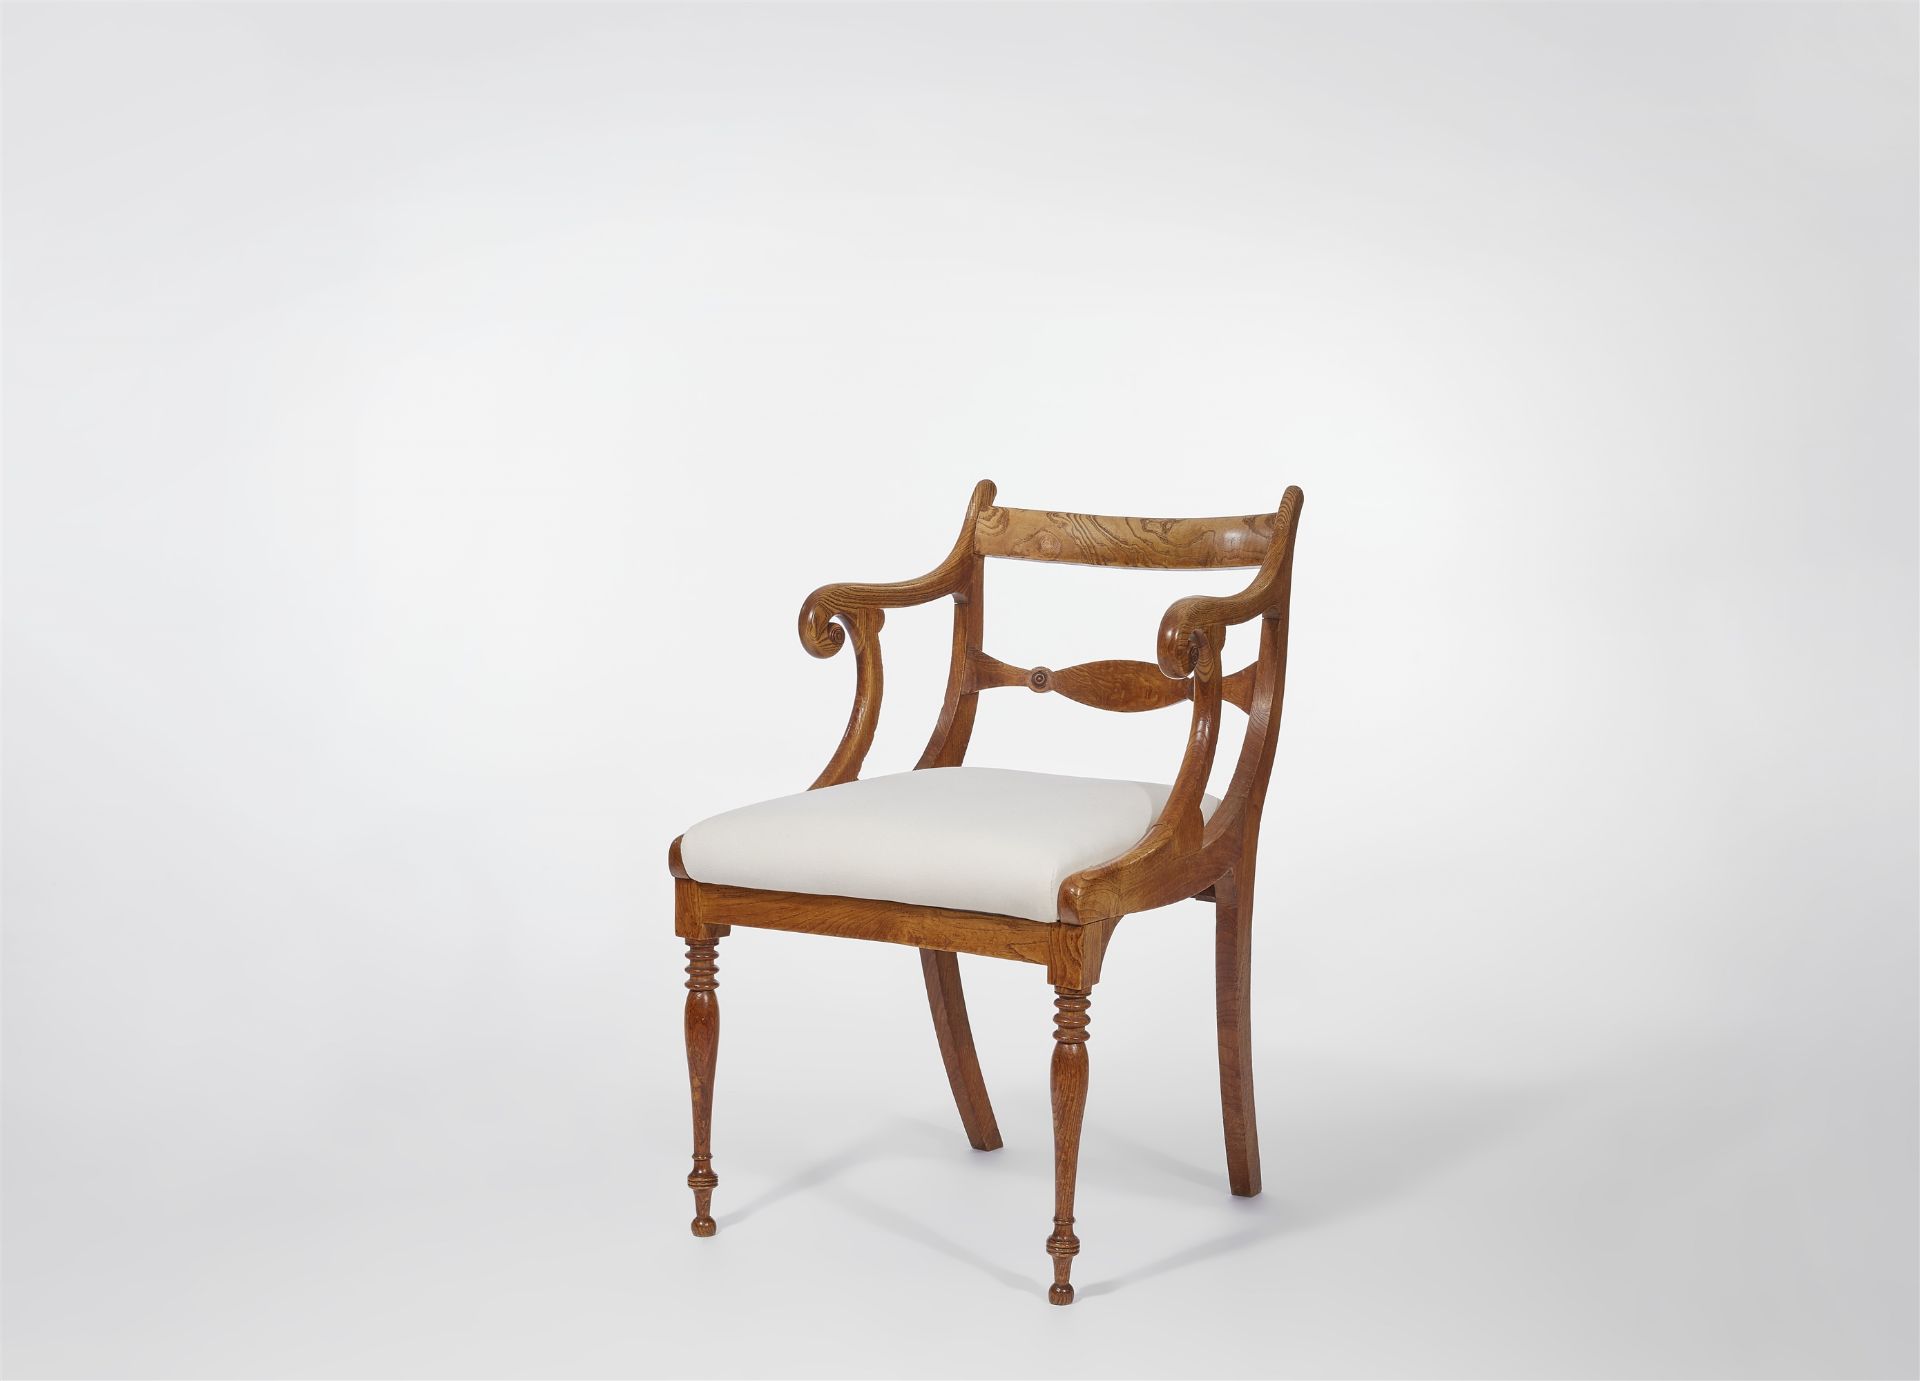 An armchair after a design by Karl Friedrich Schinkel